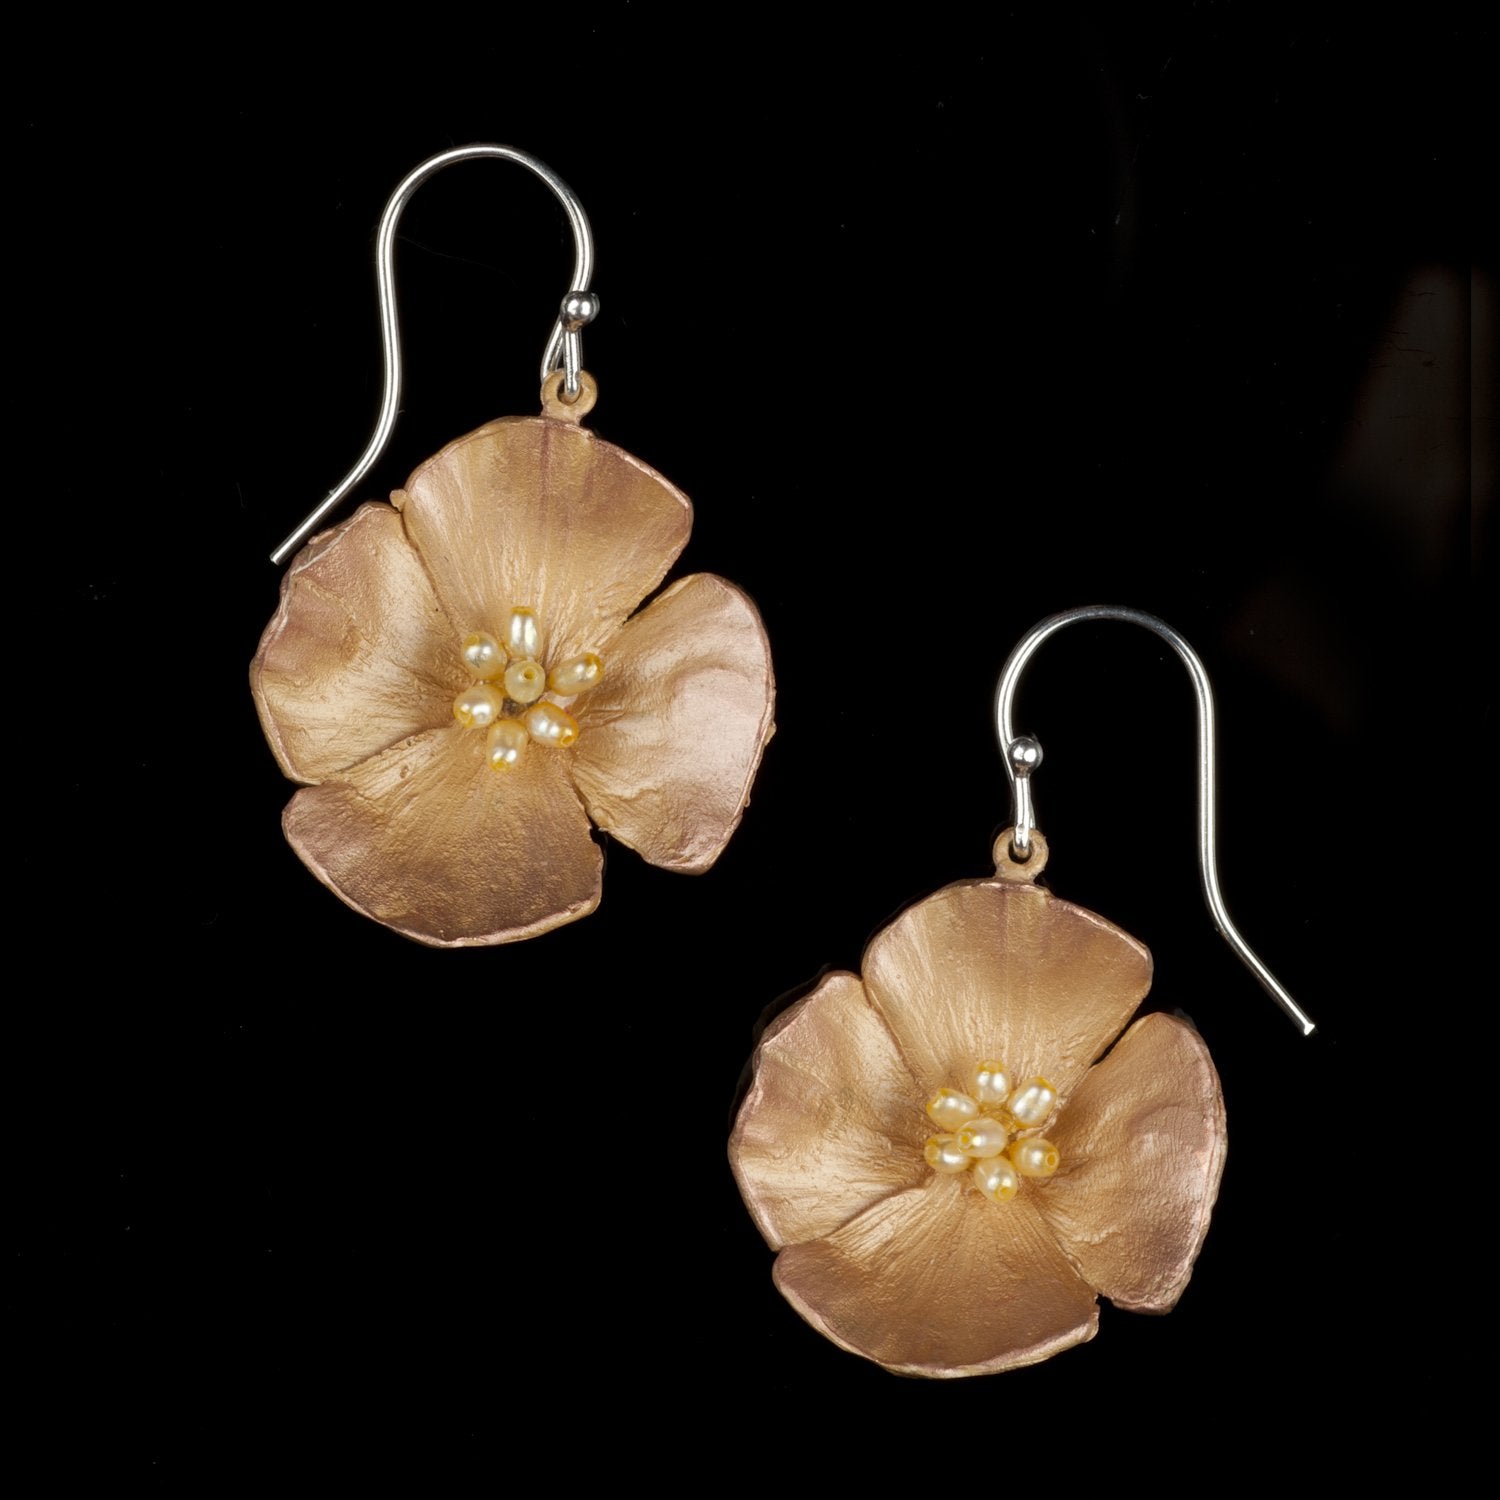 California Poppy Earrings - Large Flower